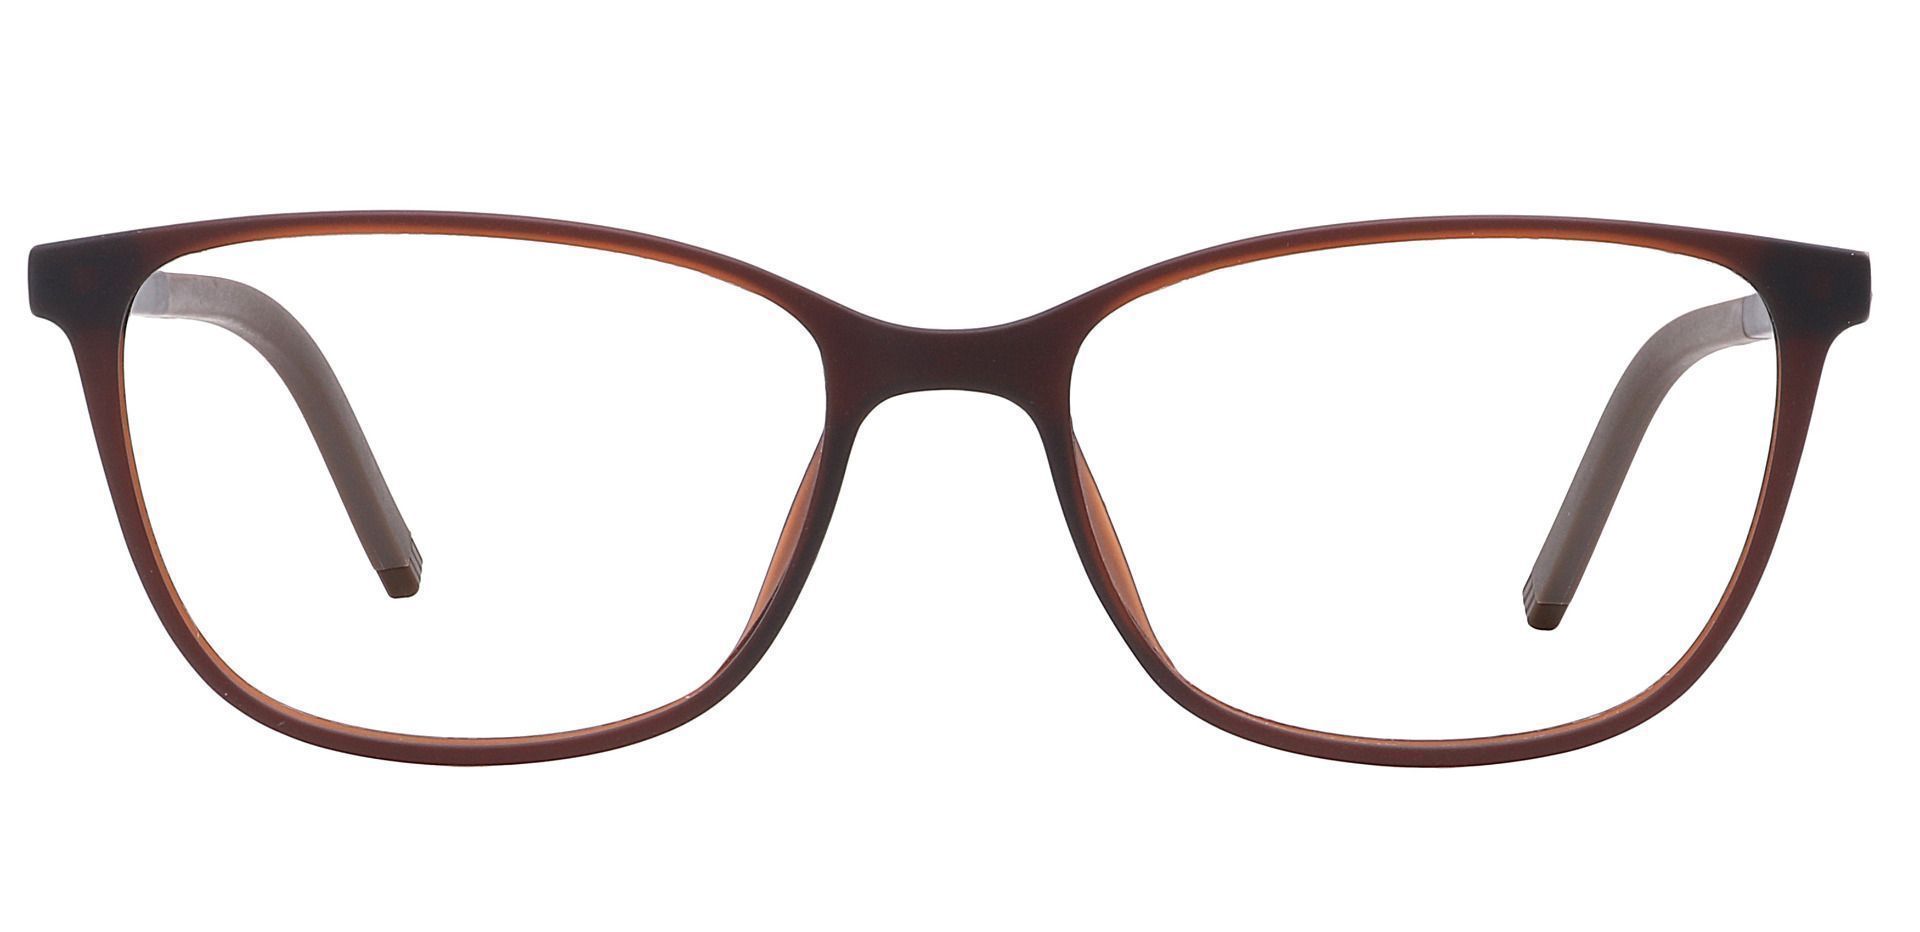 Danica Square Prescription Glasses - Brown